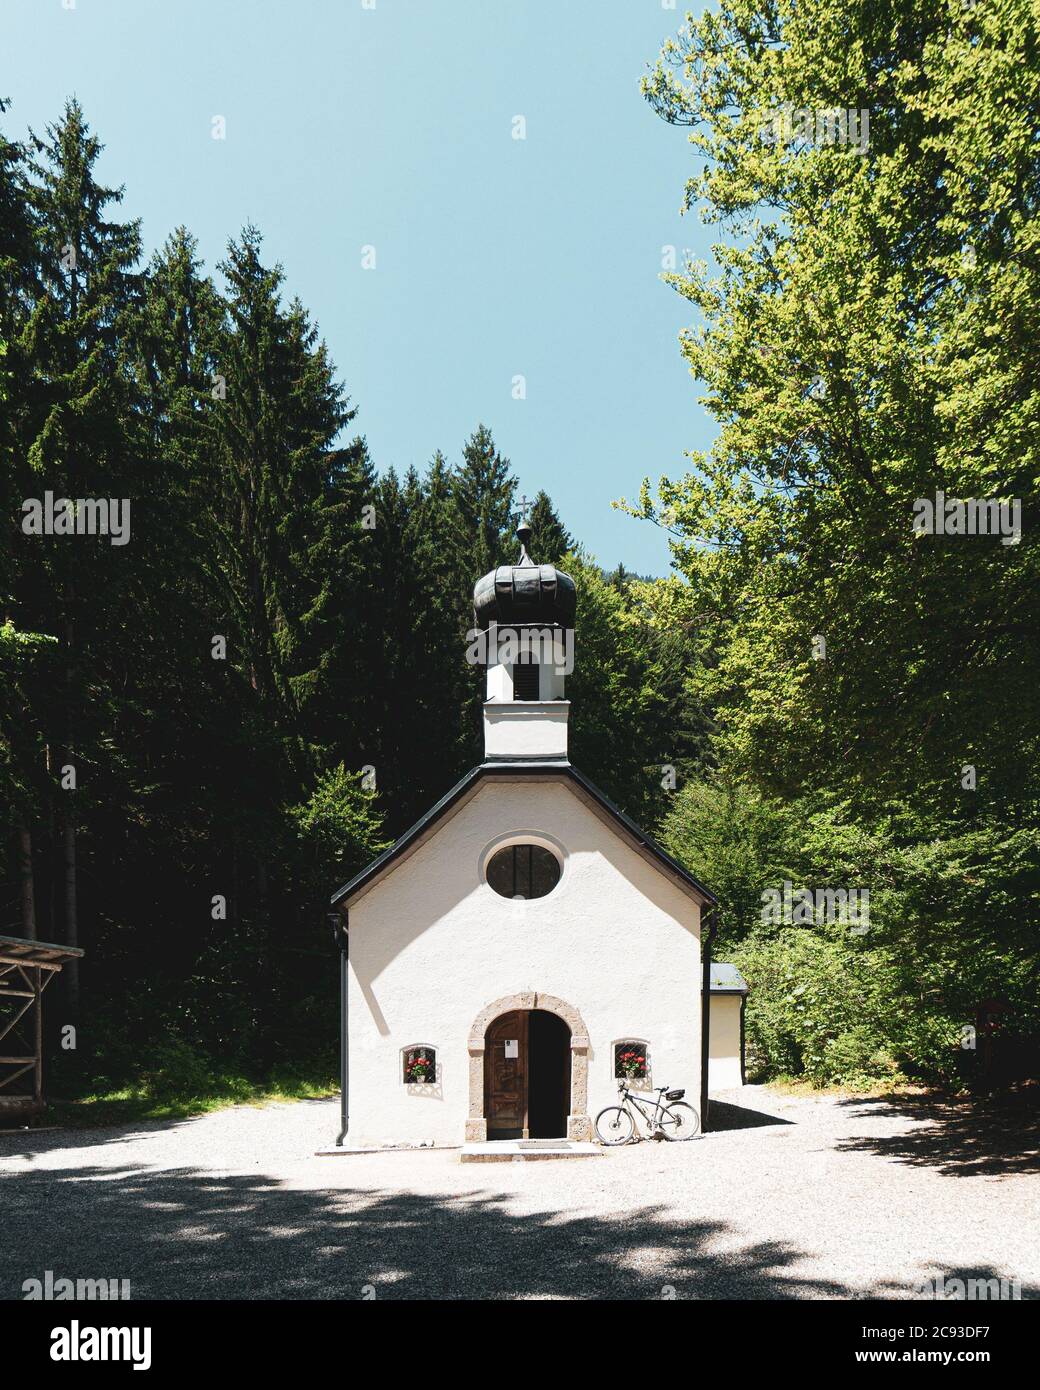 Vertical shot of Hottinger Bild chapel in Austria Stock Photo